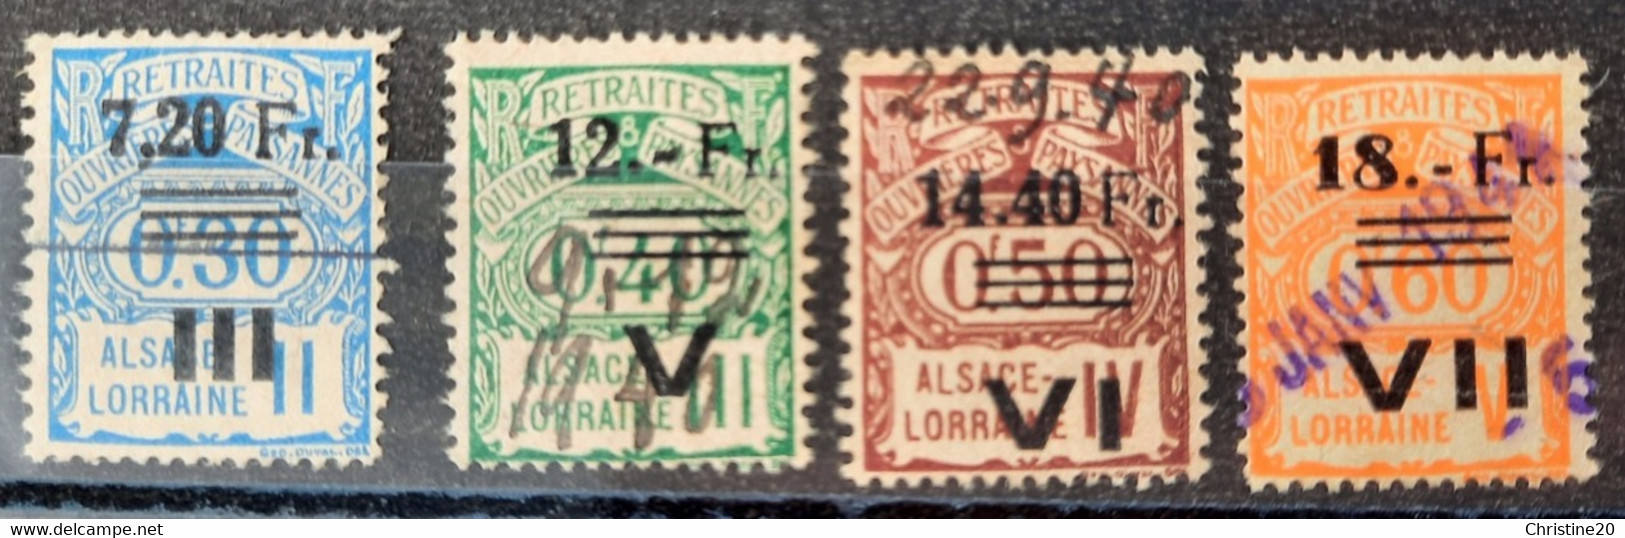 France 1940 Alsace-Lorraine N°163,165/67 Socio-postaux Occupation Allemande Régime De Transition Ob TB Cote 115€ - Gebraucht